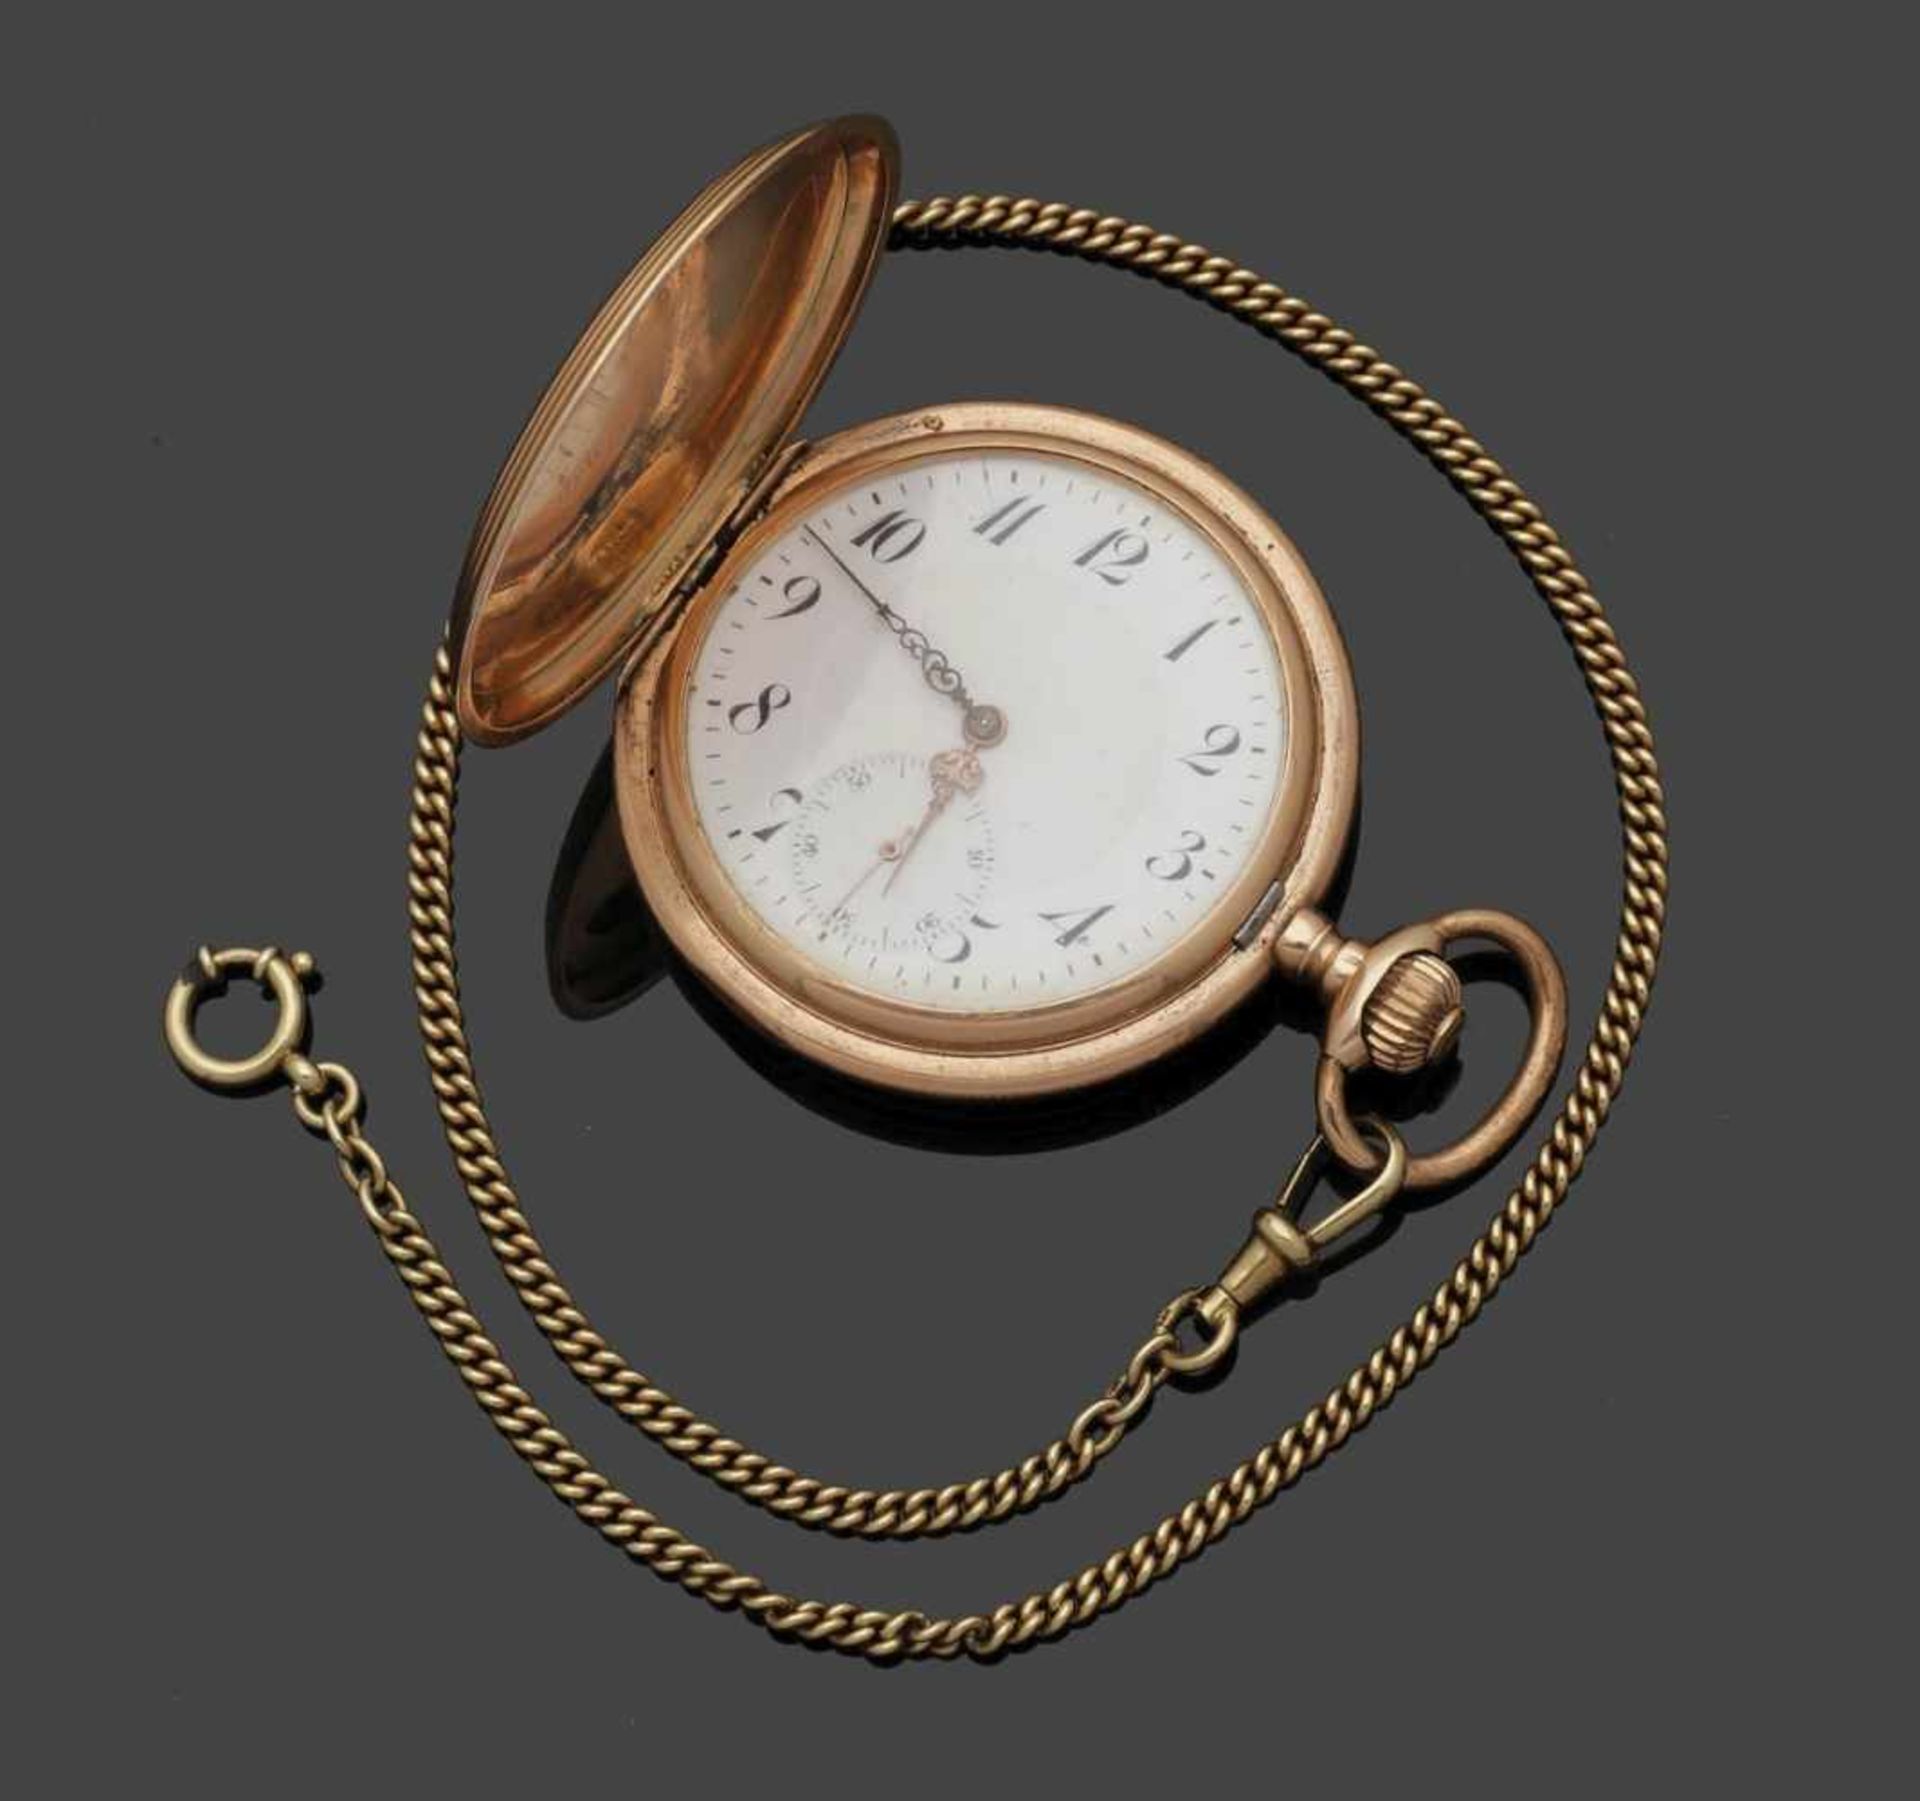 Savonette mit Uhrenkette Fa. Philippe Dubois & Fils, Schweiz. Savonette: 585er Roségold, gestemp. - Bild 4 aus 4